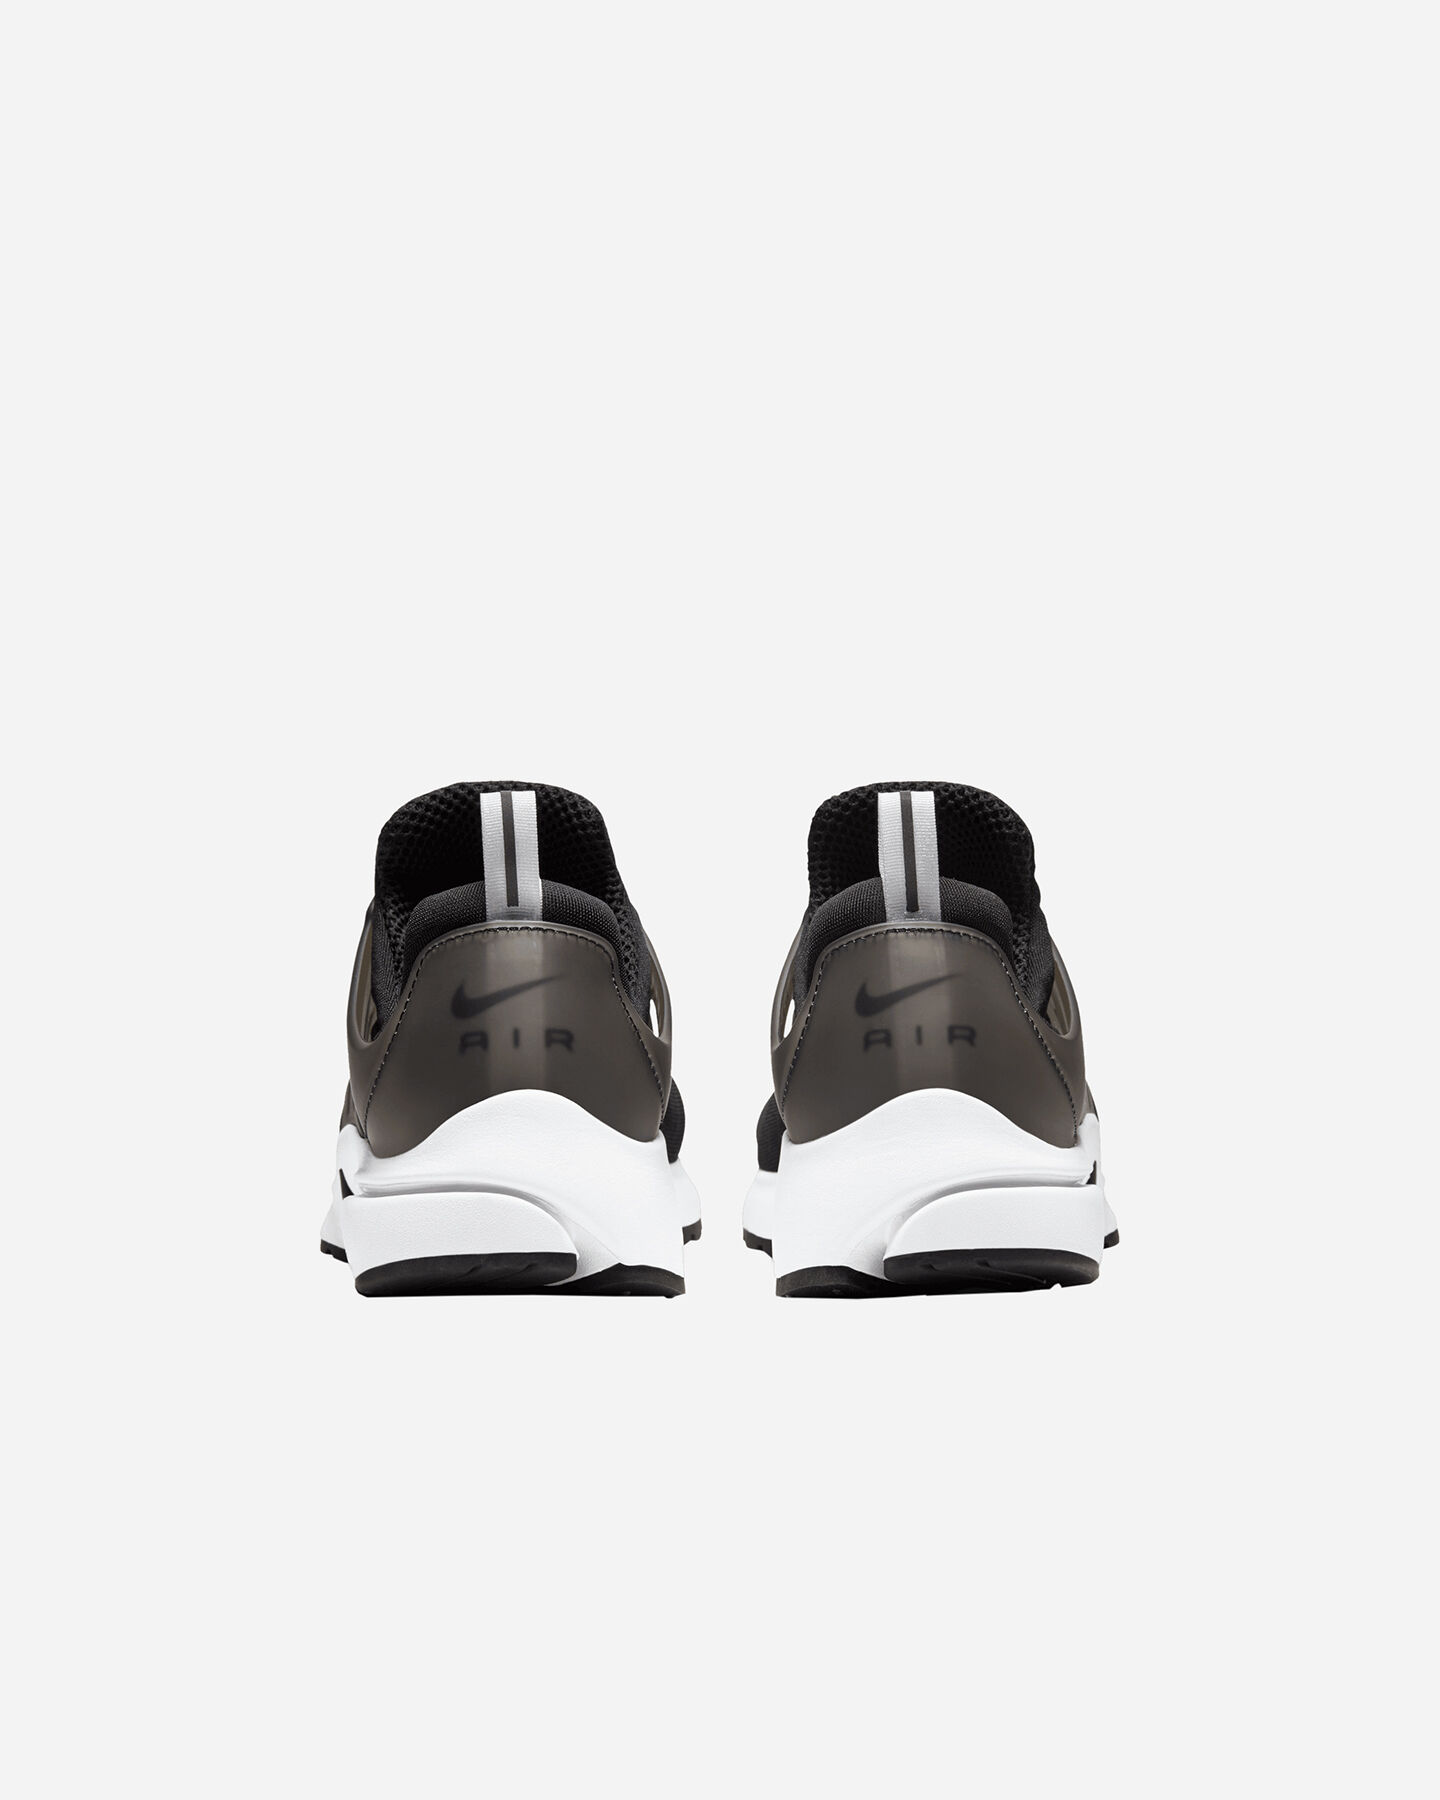  Scarpe sneakers NIKE AIR PRESTO M S5284950|001|6 scatto 4